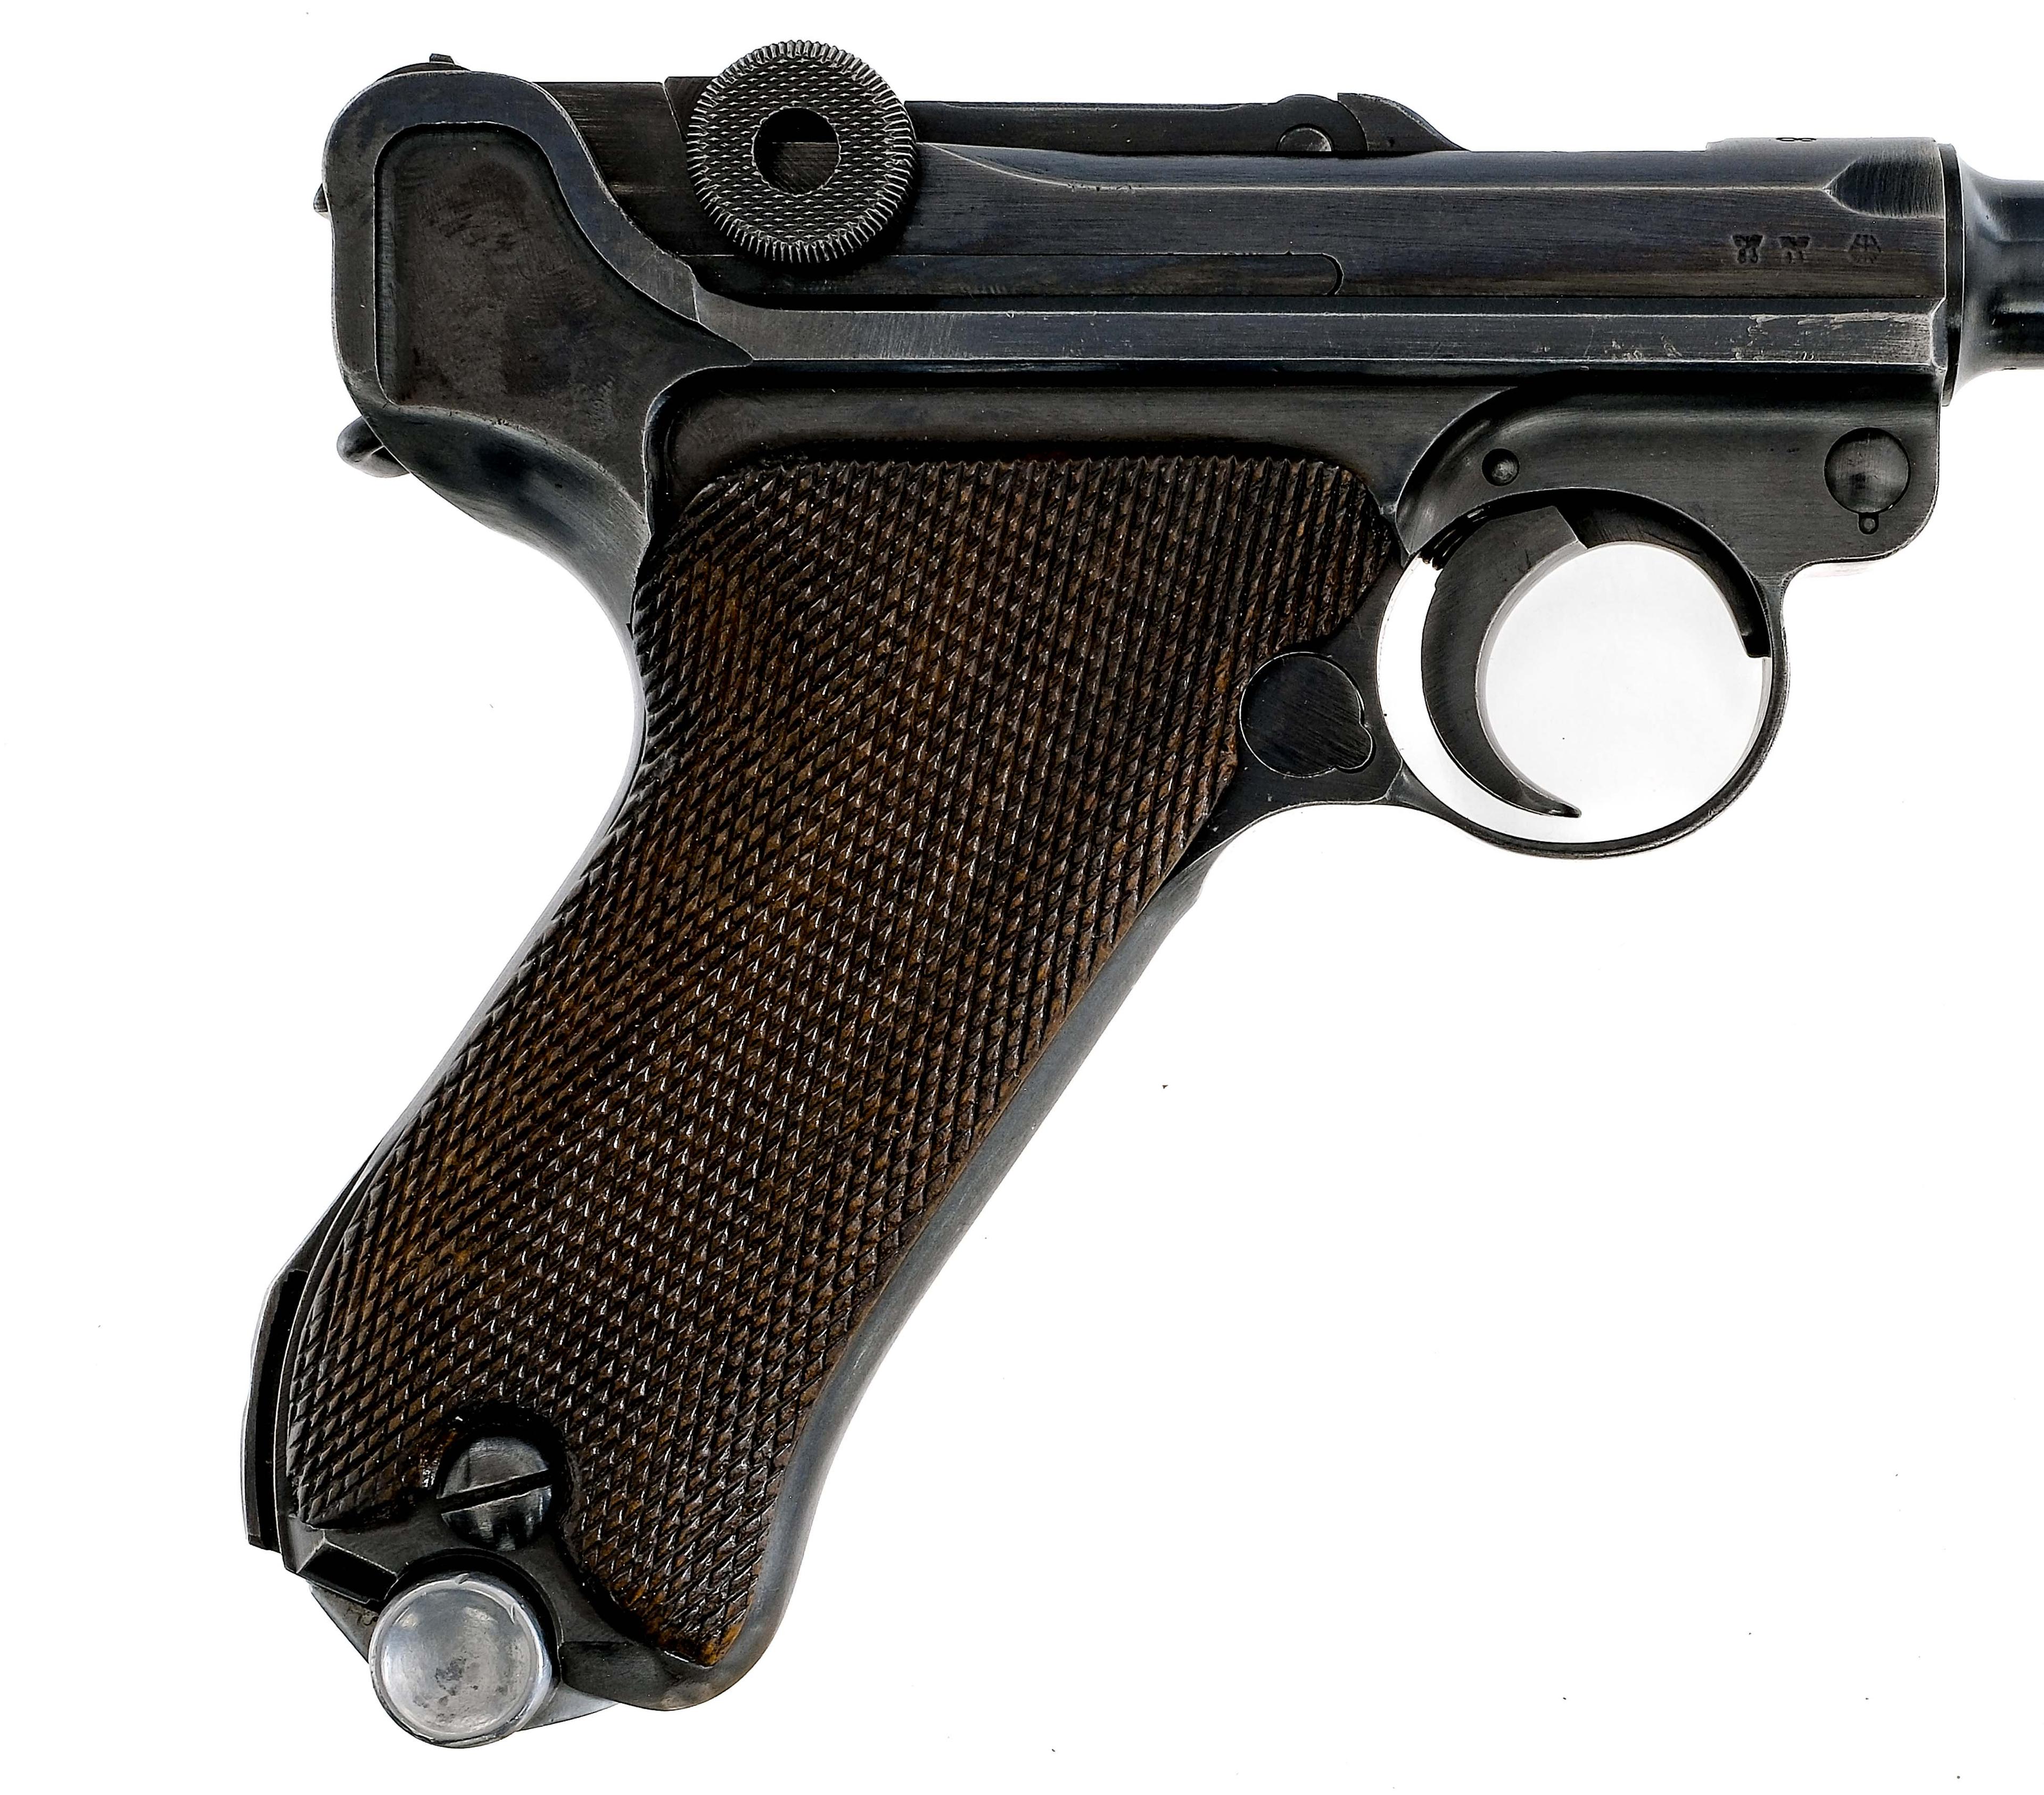 Mauser Luger P08 9mm 1938 Semi Auto Pistol